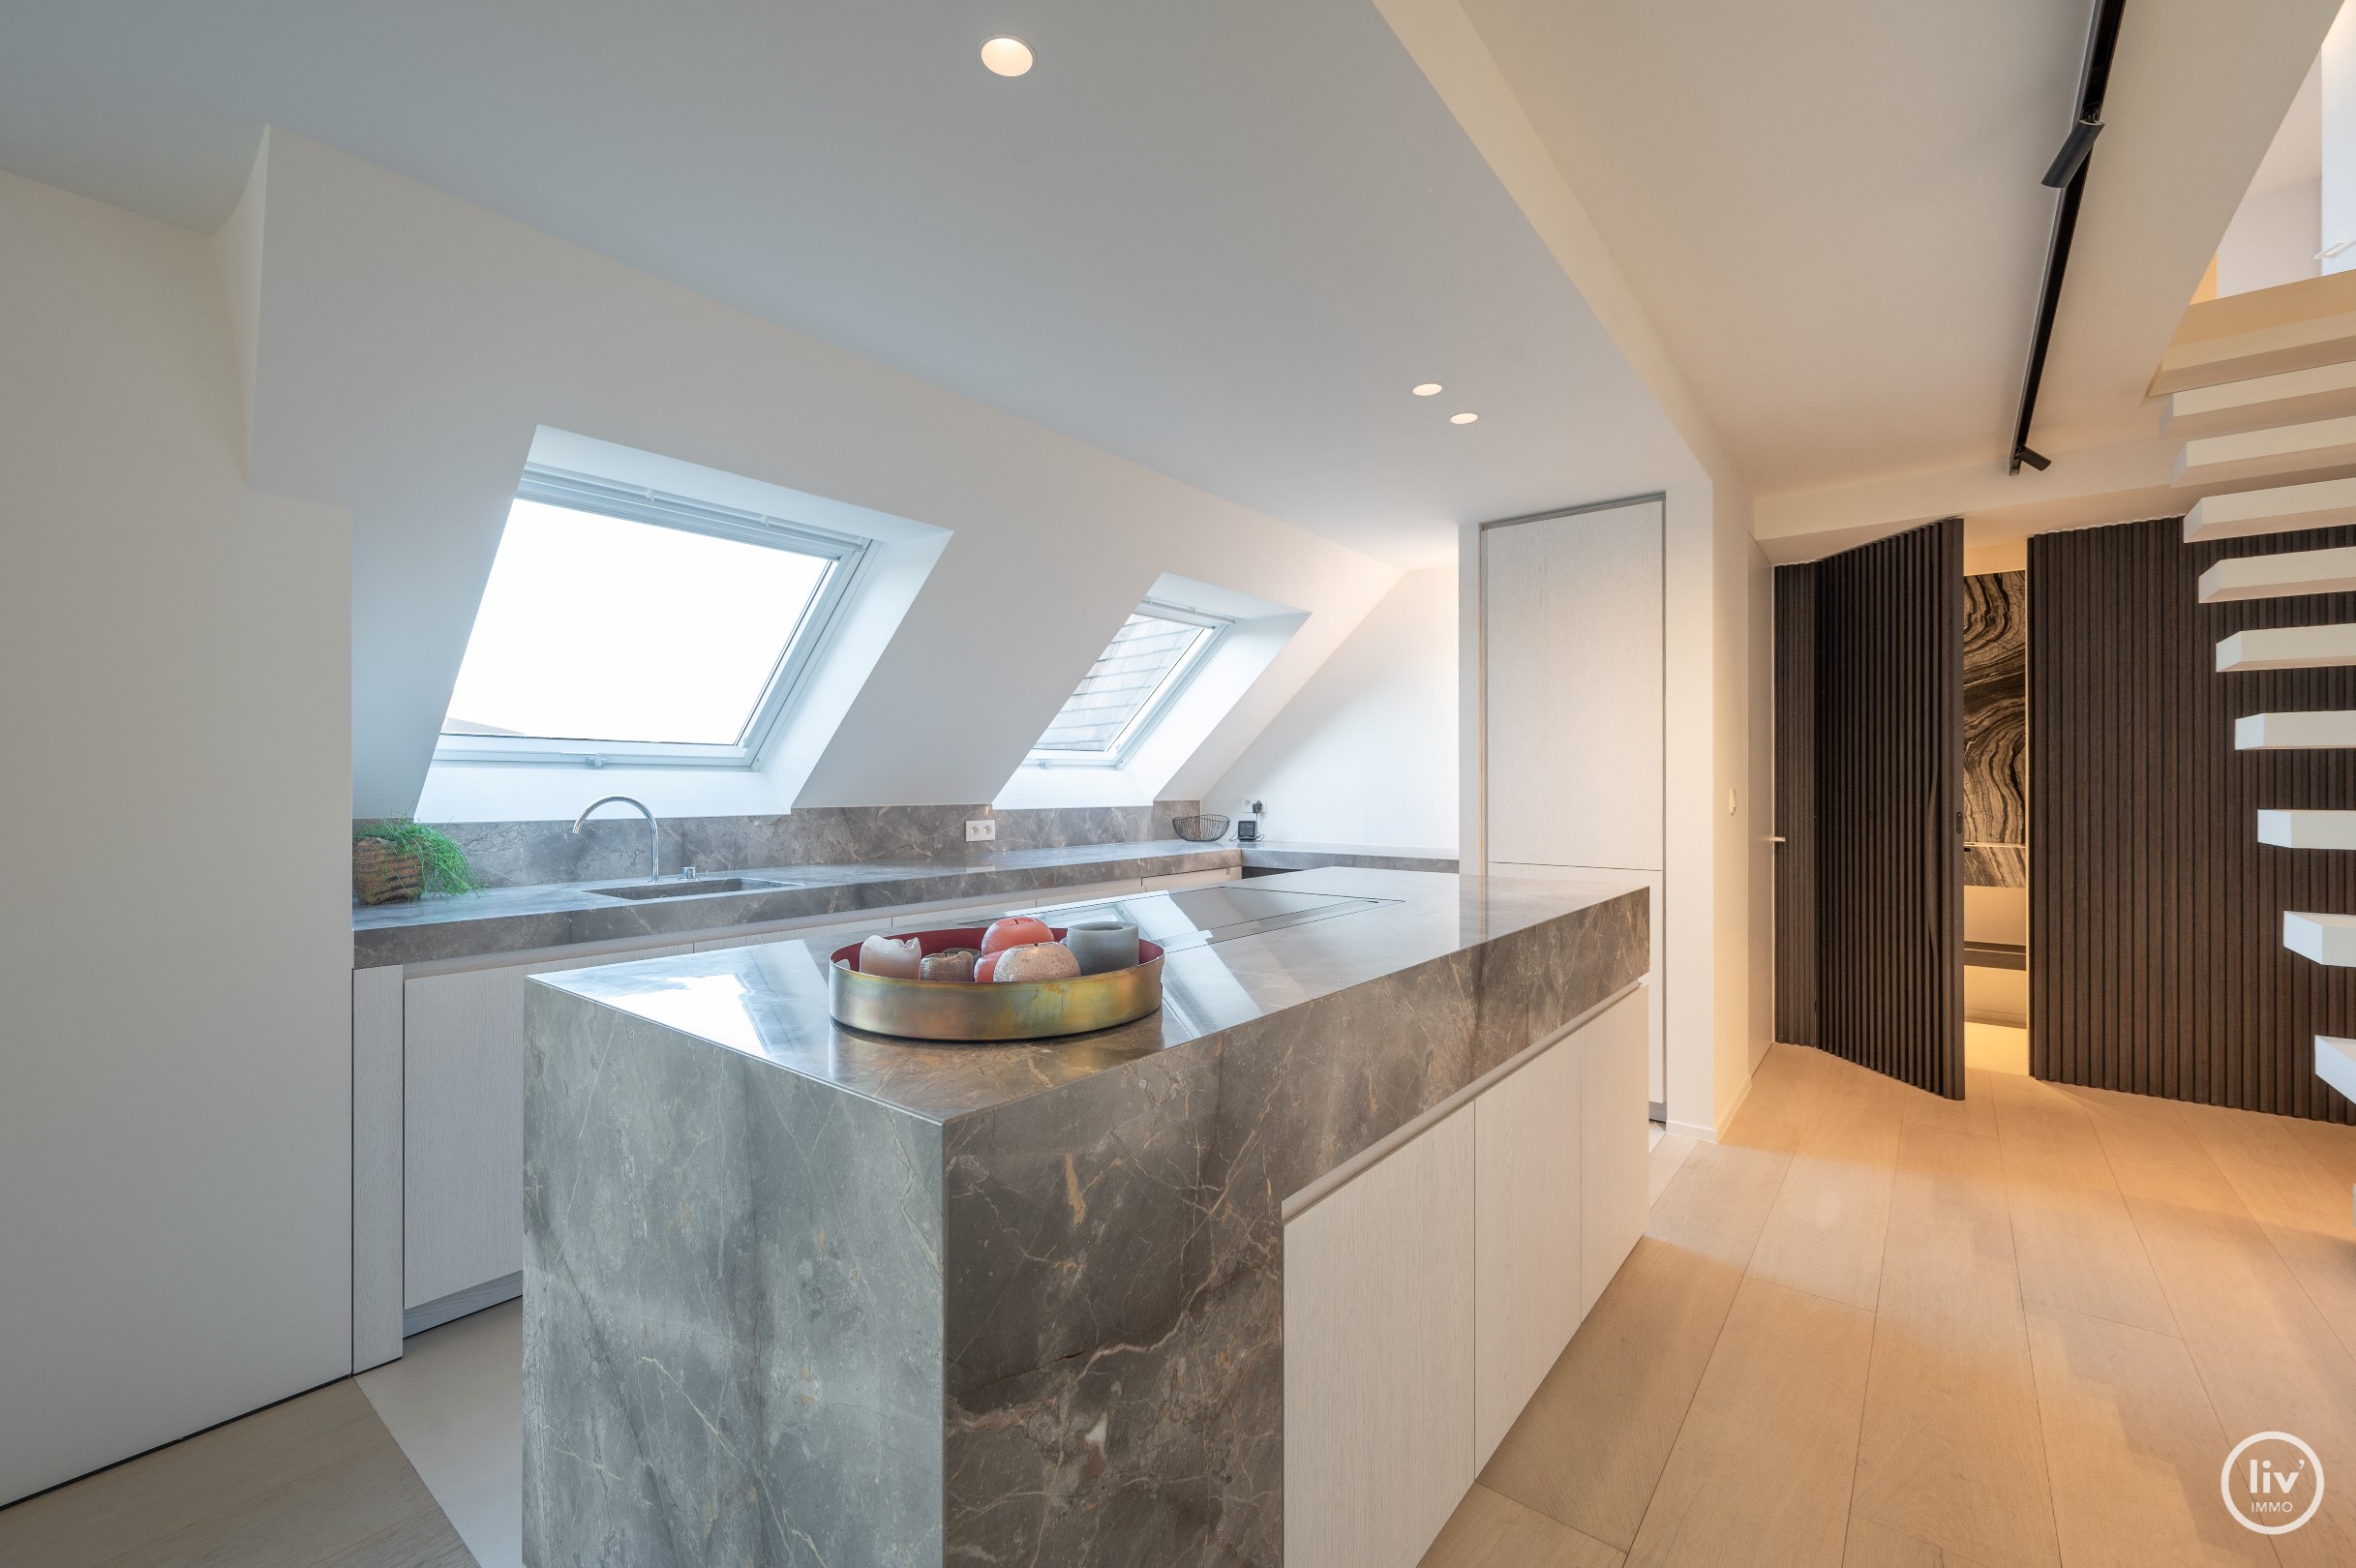 Prachtig appartement, gerenoveerd (2022) op een toplocatie op enkele minuten van het Albertplein en het strand. 